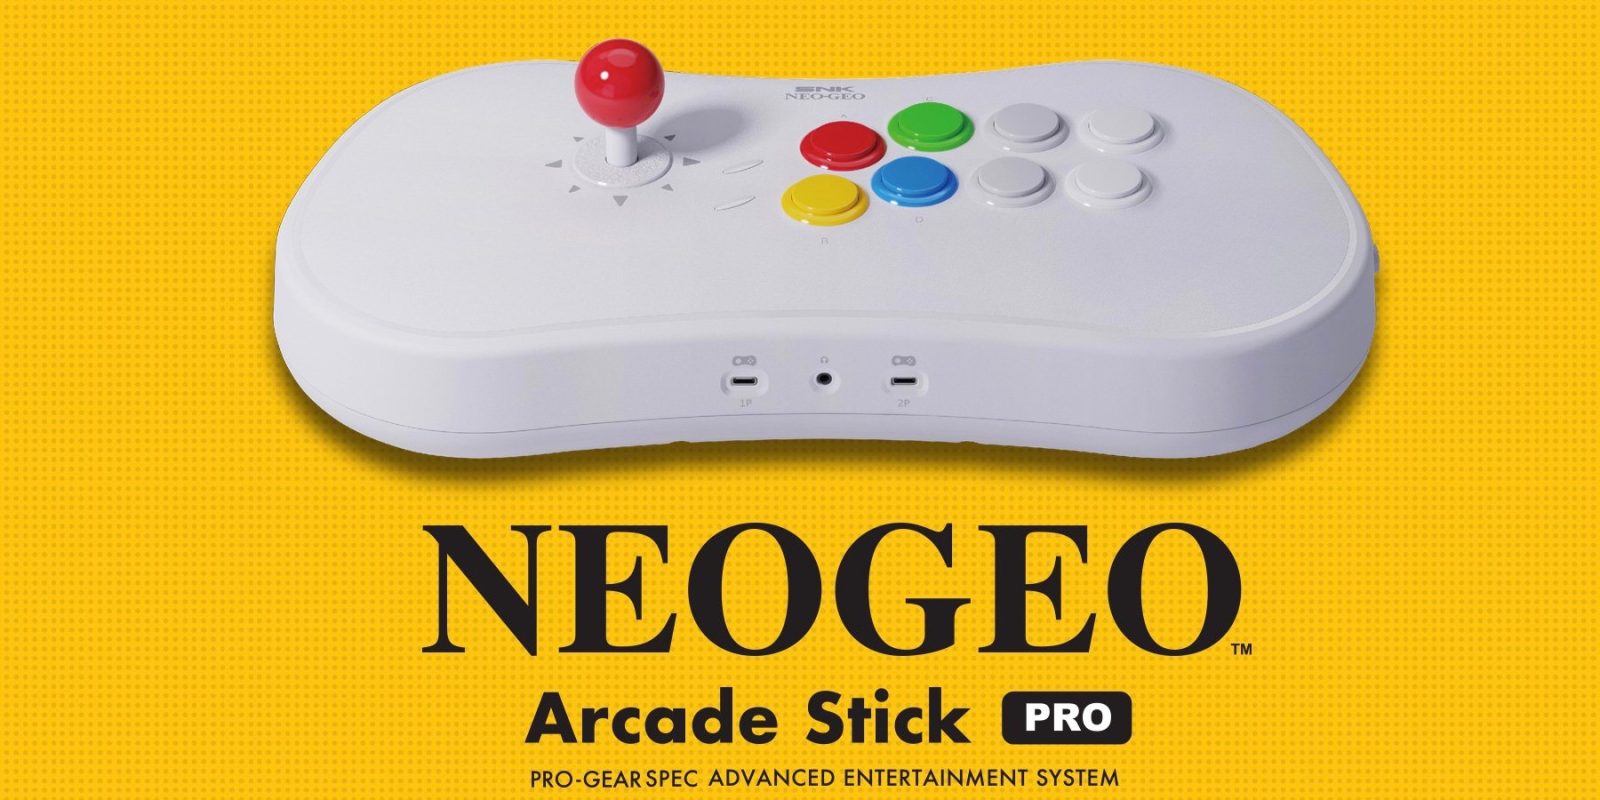 NEOGEO-Arcade-Stick-Pro-04.jpg?quality=82&strip=all&w=1600